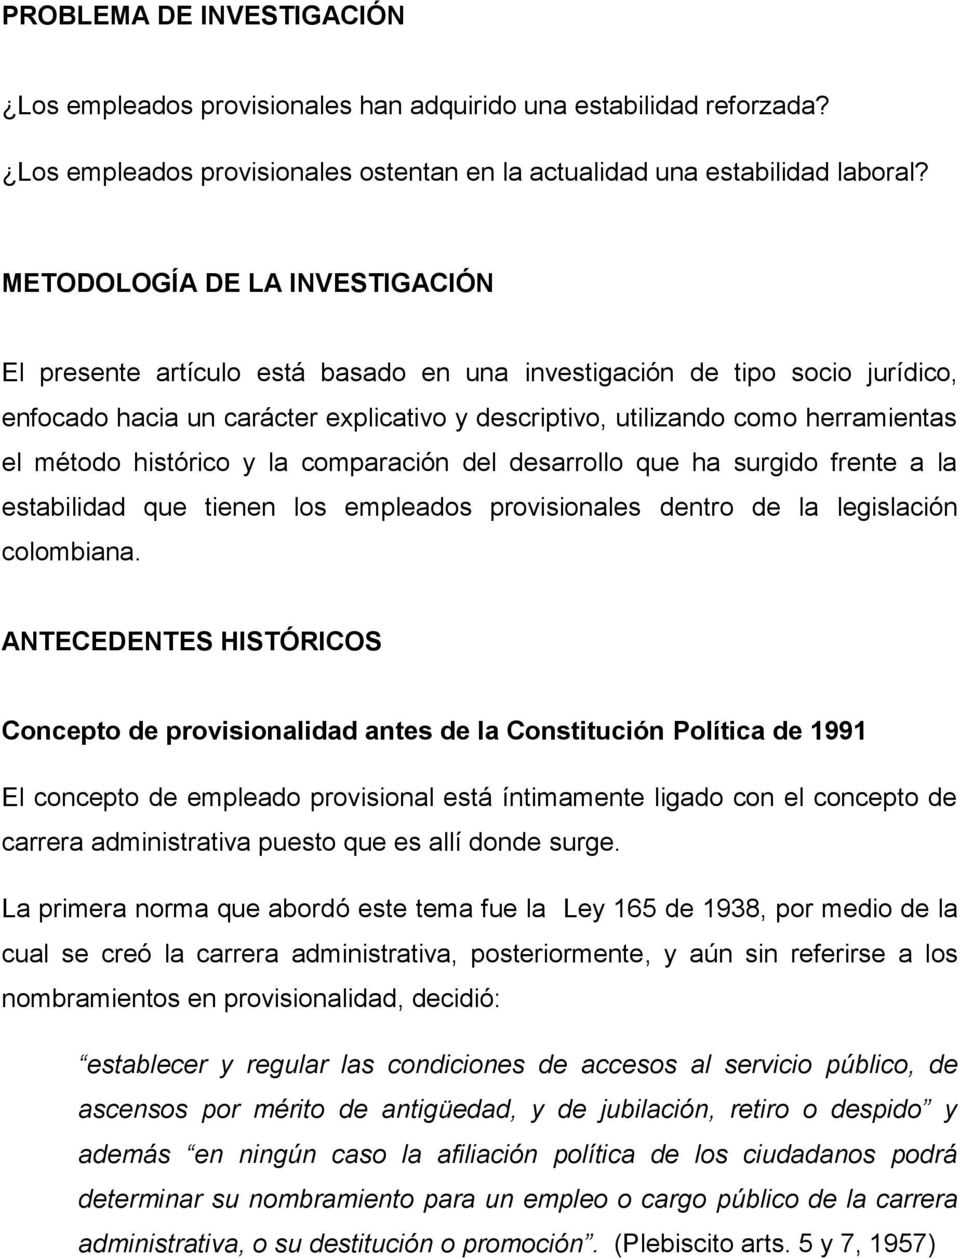 método histórico y la comparación del desarrollo que ha surgido frente a la estabilidad que tienen los empleados provisionales dentro de la legislación colombiana.